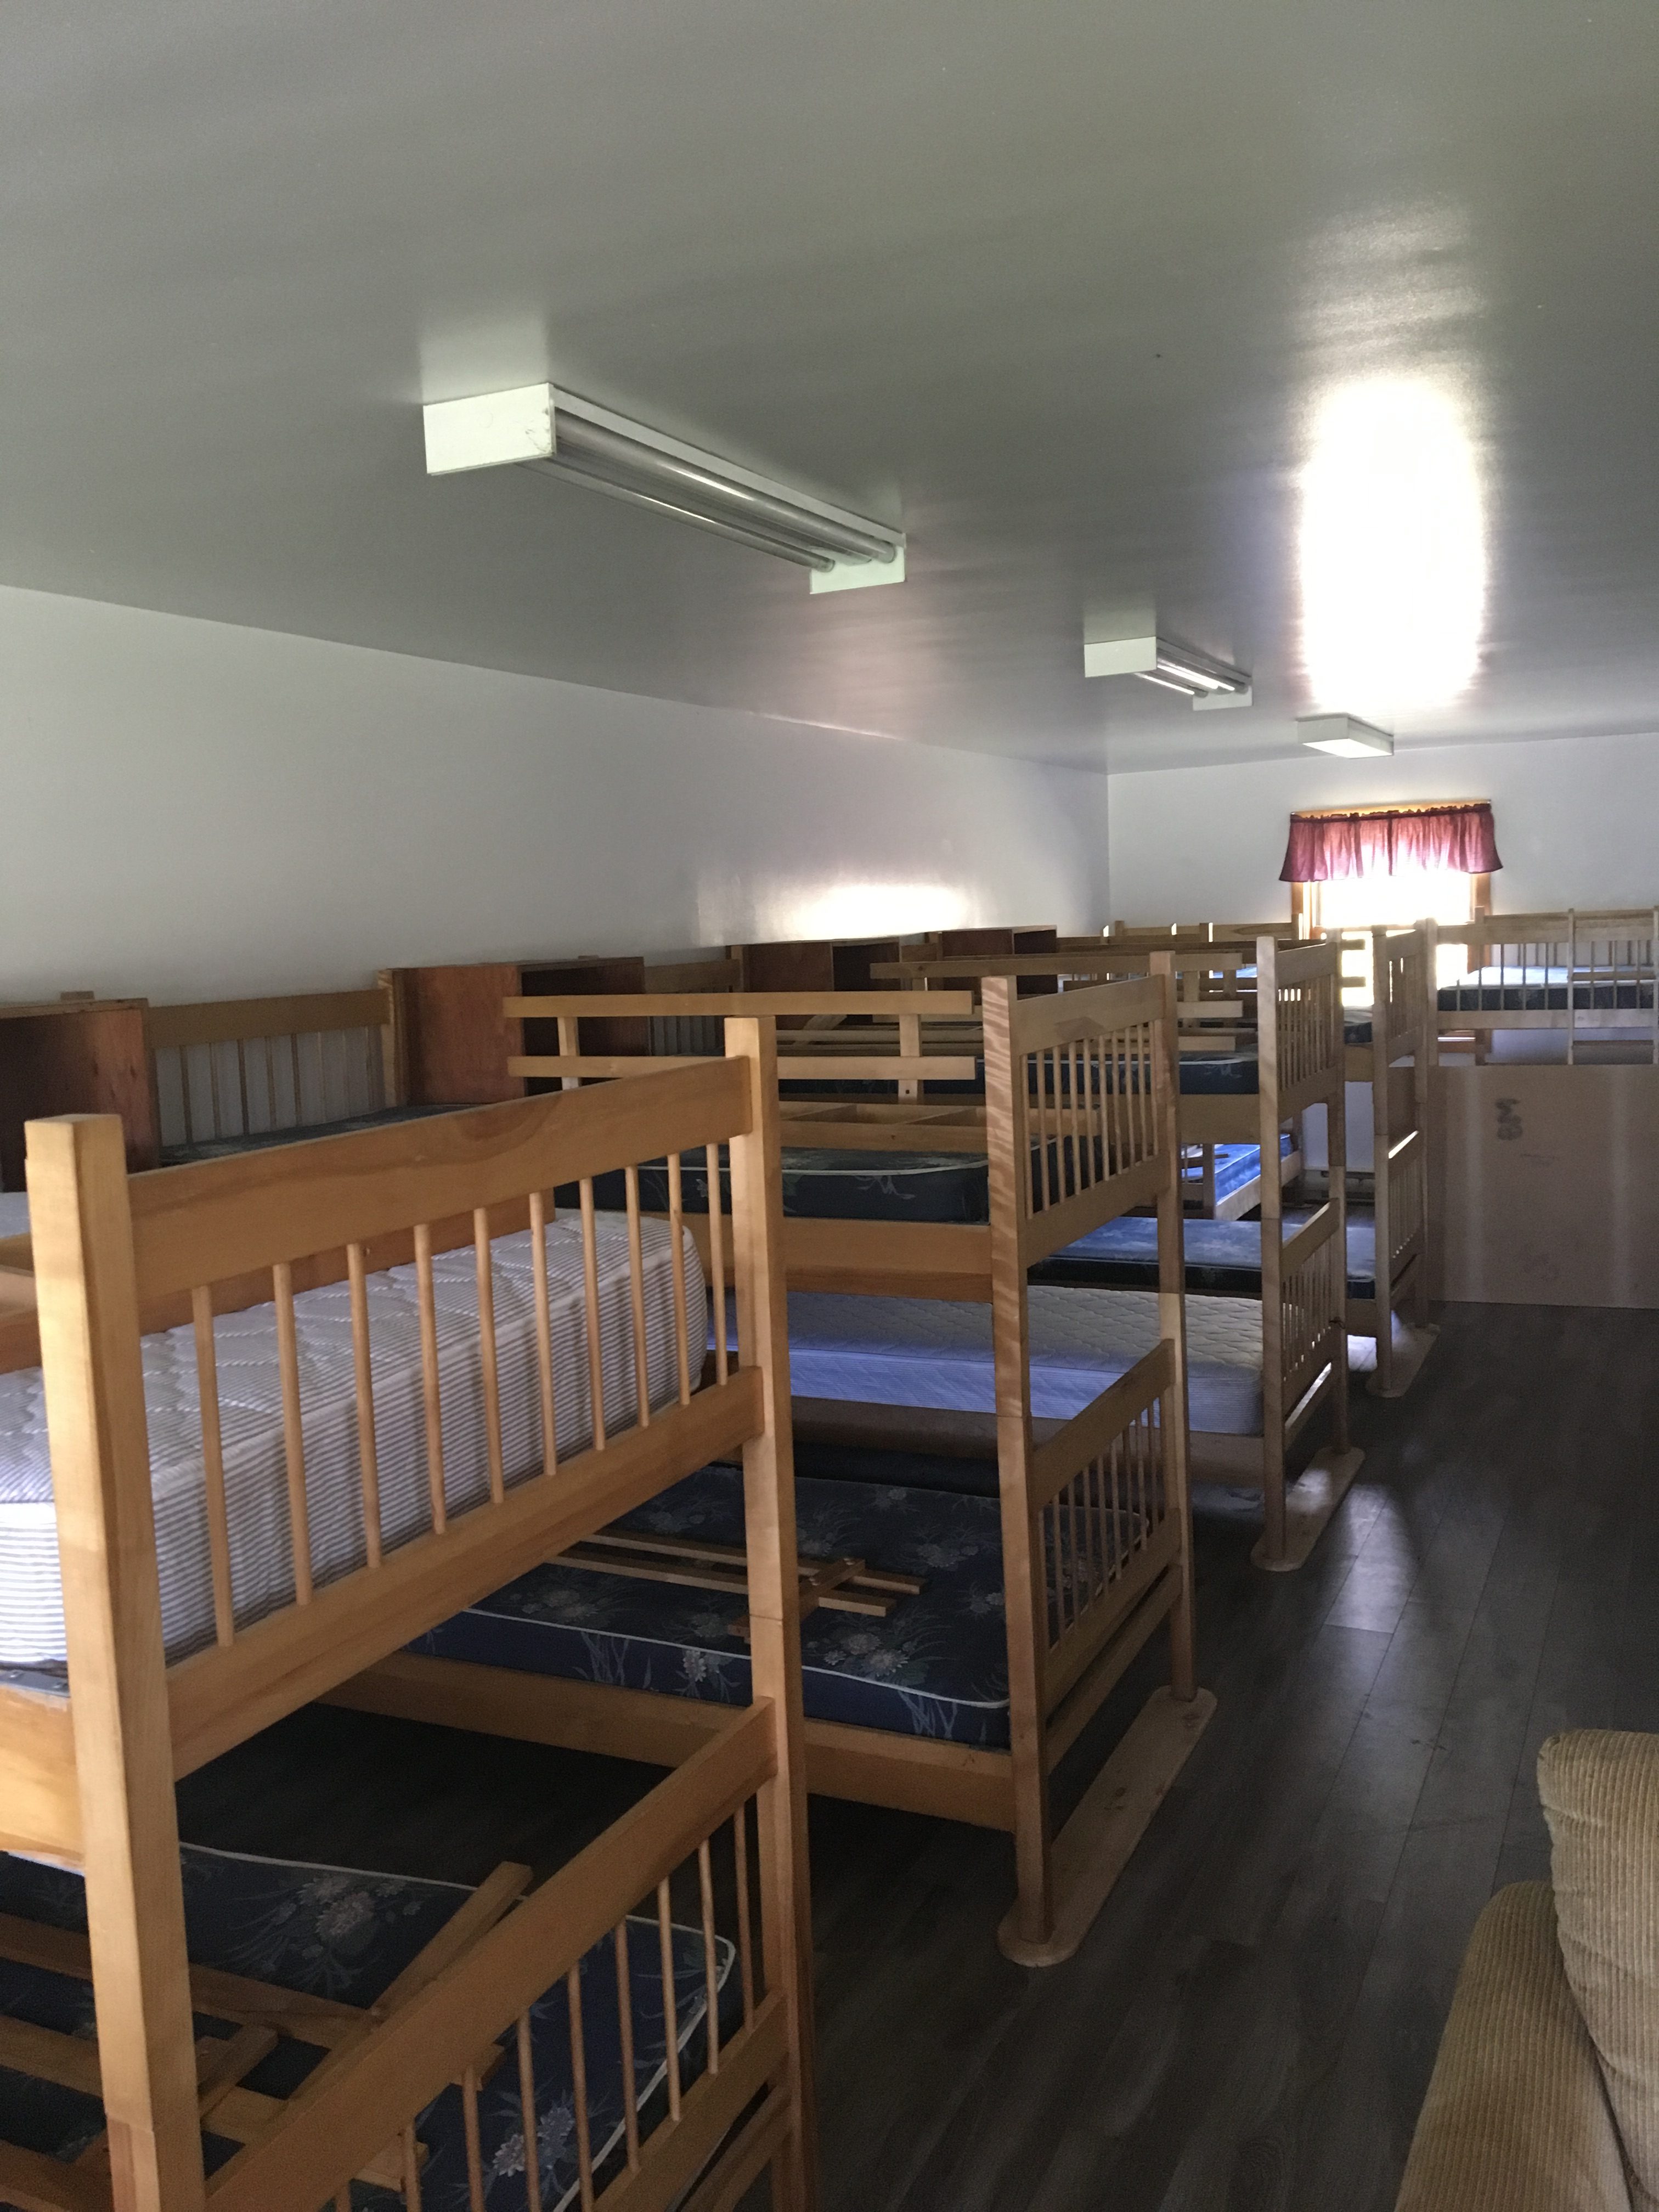 Dormitory Cabins